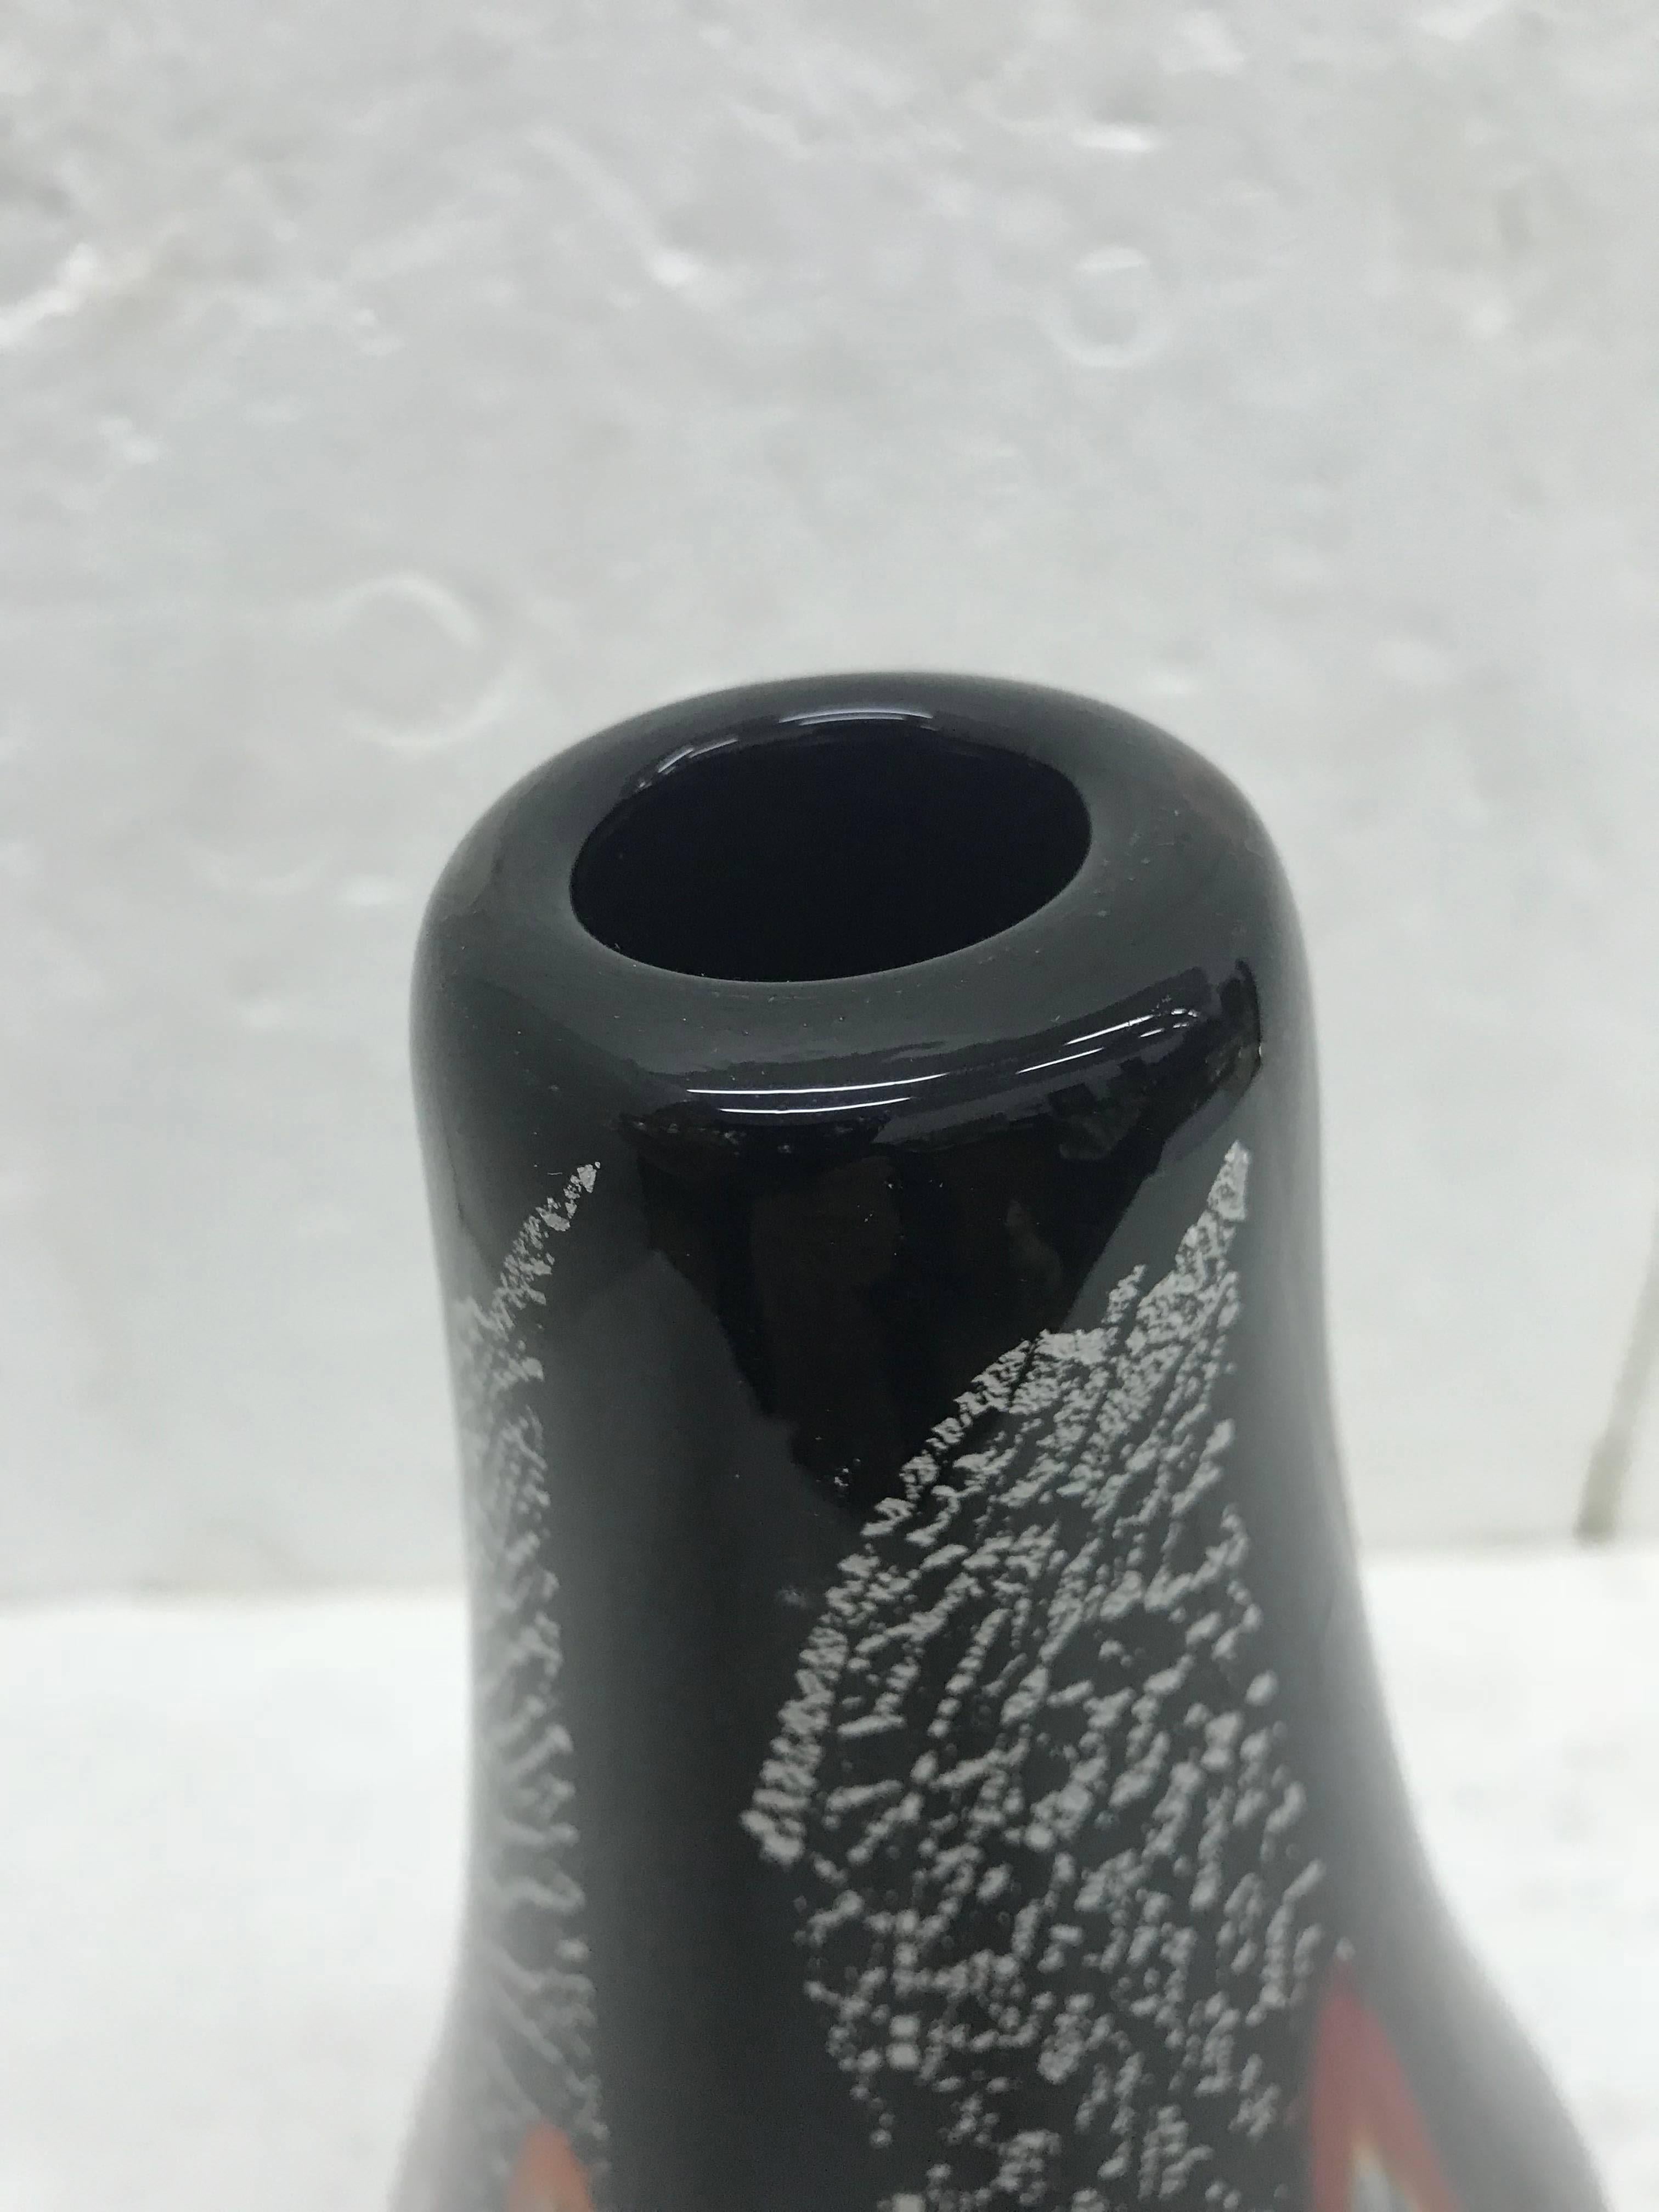 Die Vase aus schwarzem und weißem Murano-Glas mit Murrin-Einsätzen ist auf dem Boden signiert: Barbini 1975. Sie wurde von Alfredo Barbini entworfen und hergestellt und ist ein auffallendes und anspruchsvolles Stück, das charakteristisch für